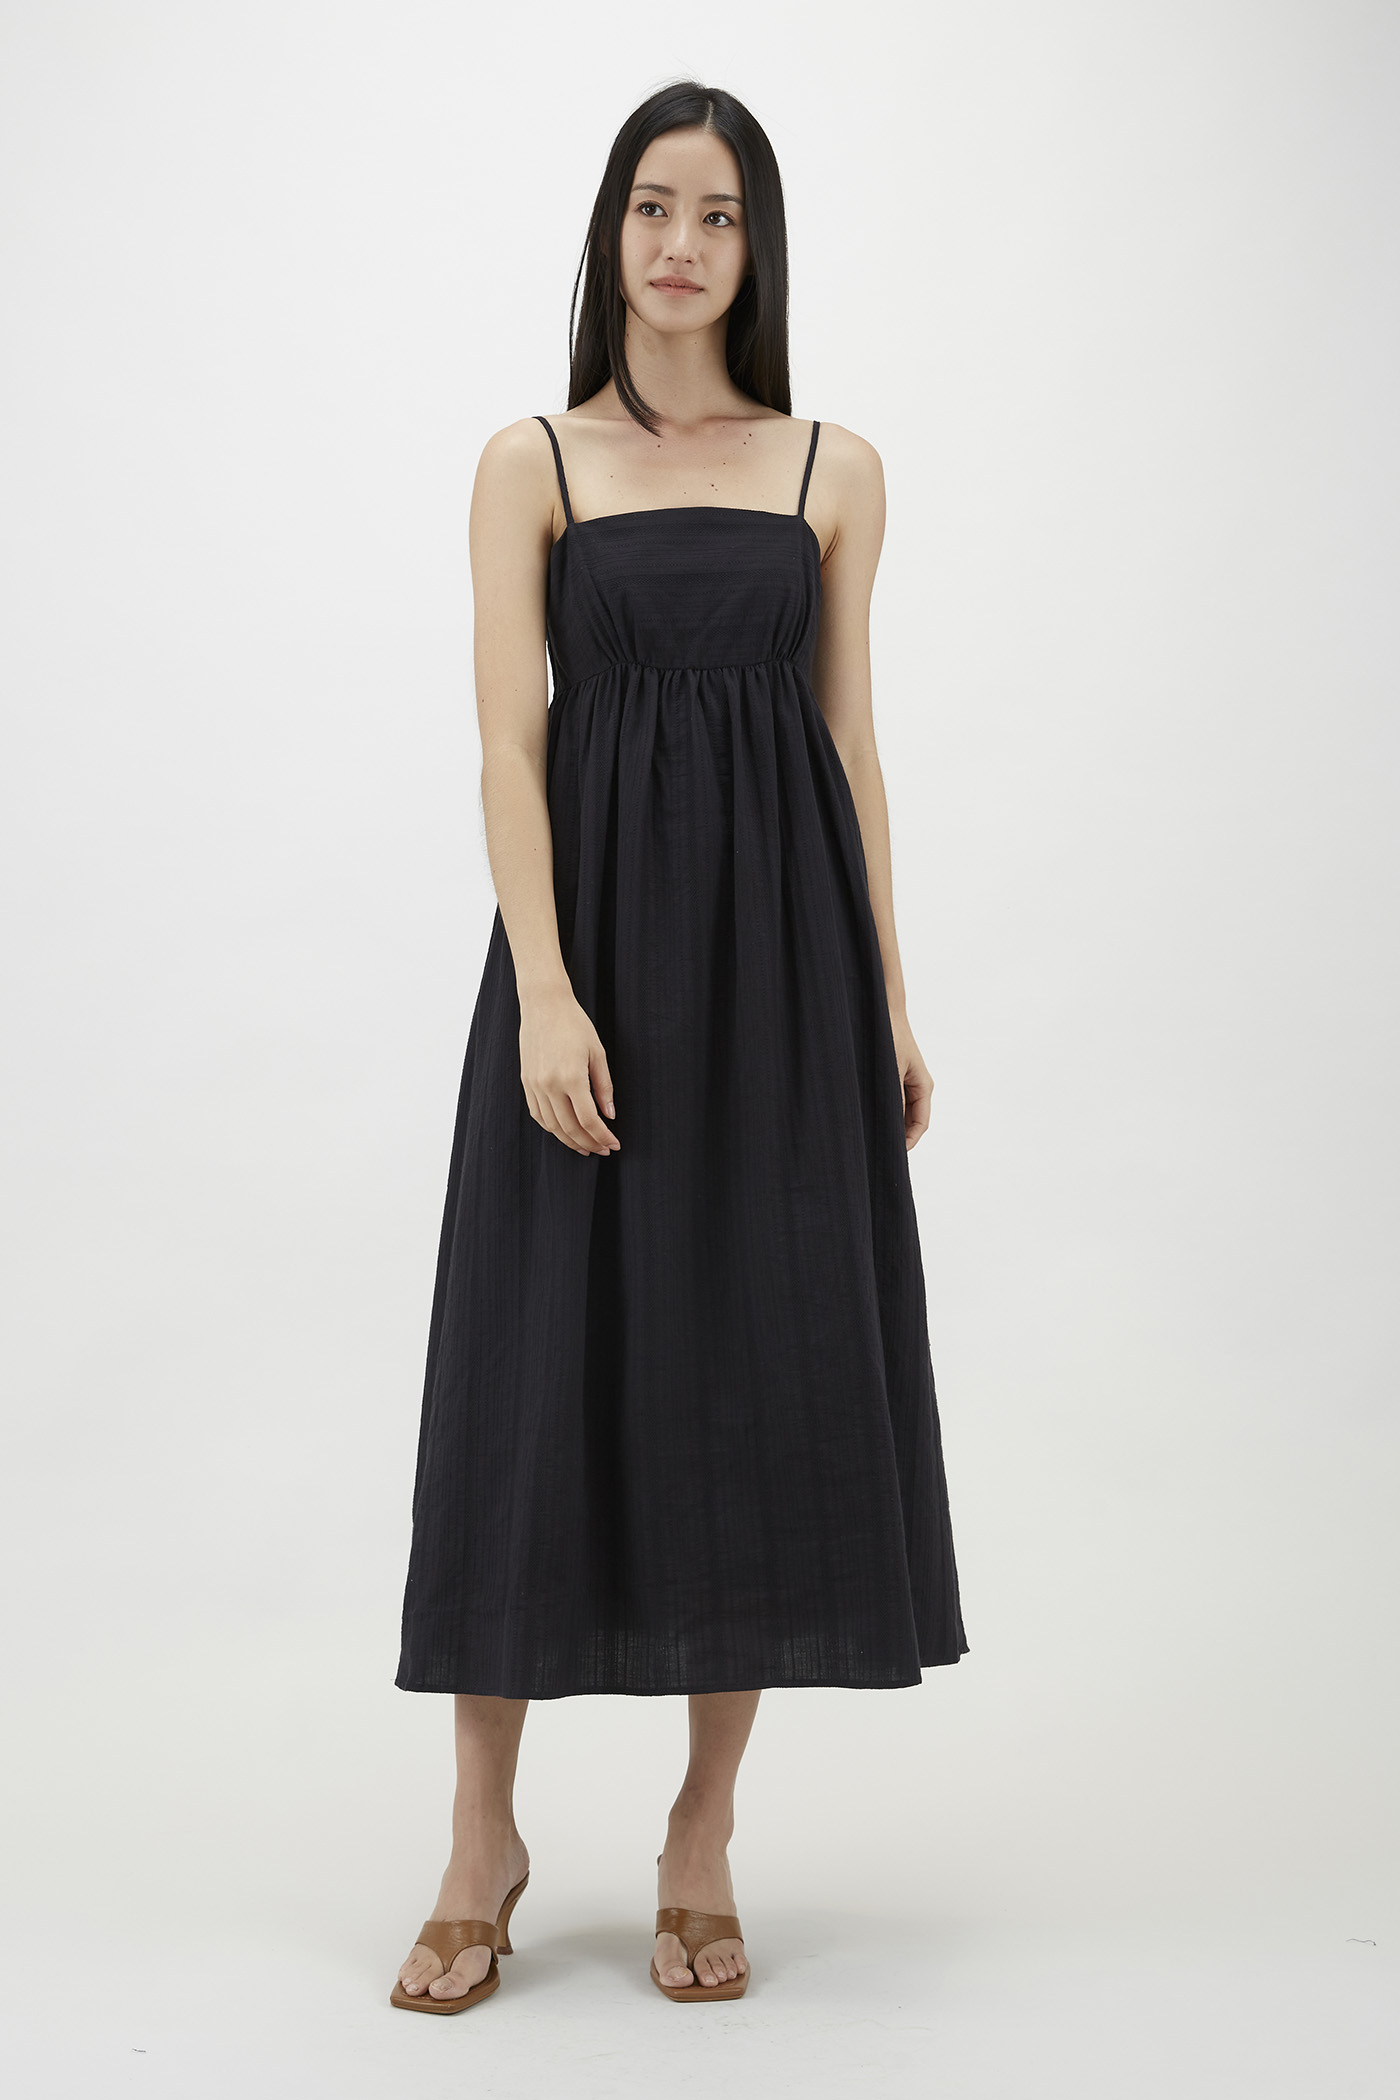 Rosena Textured Empire-Waist Dress